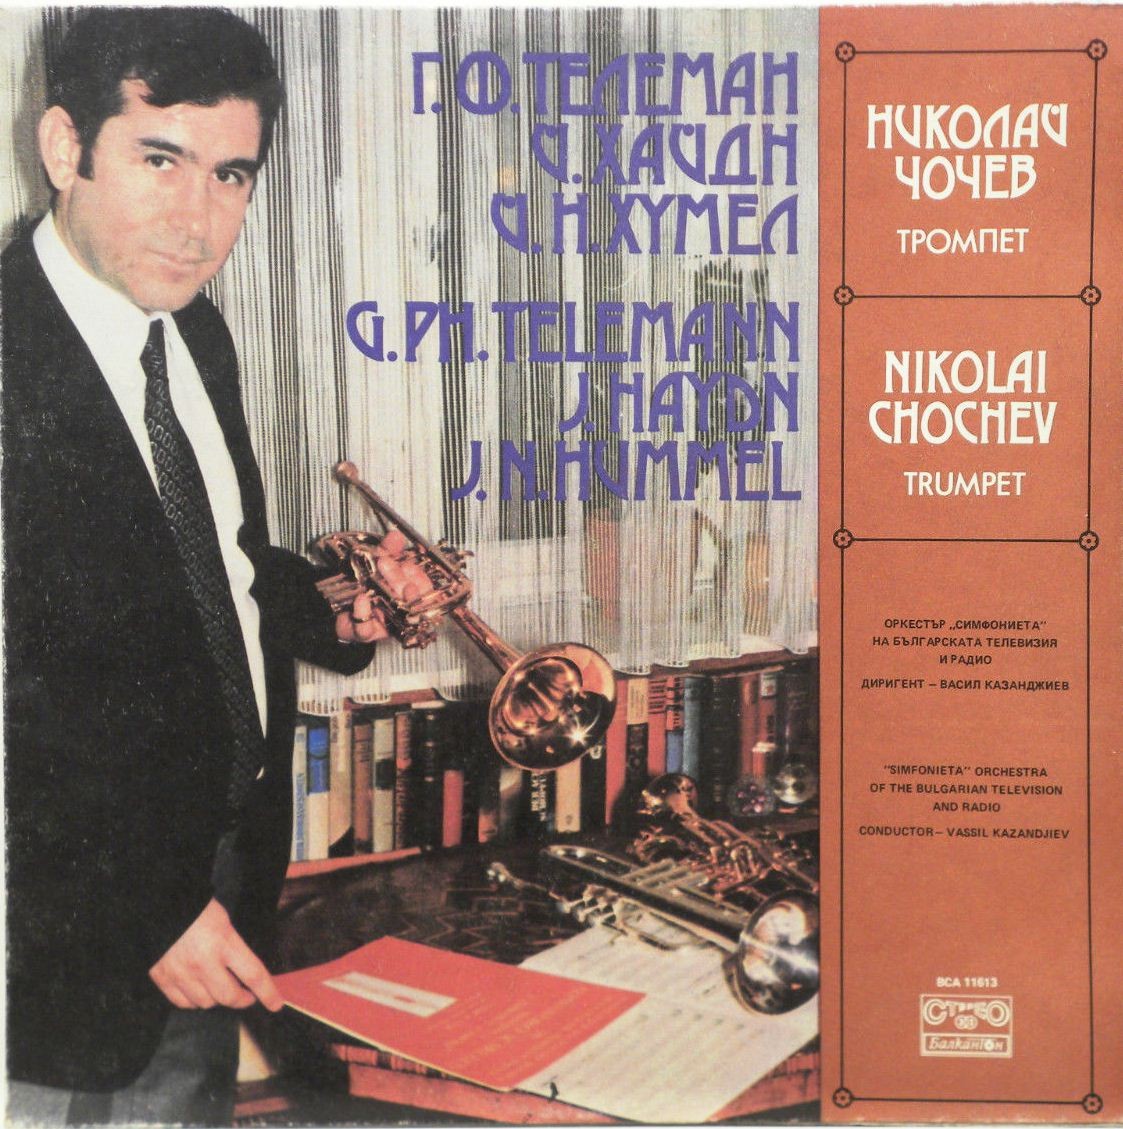 Николай Чочев - тромпет